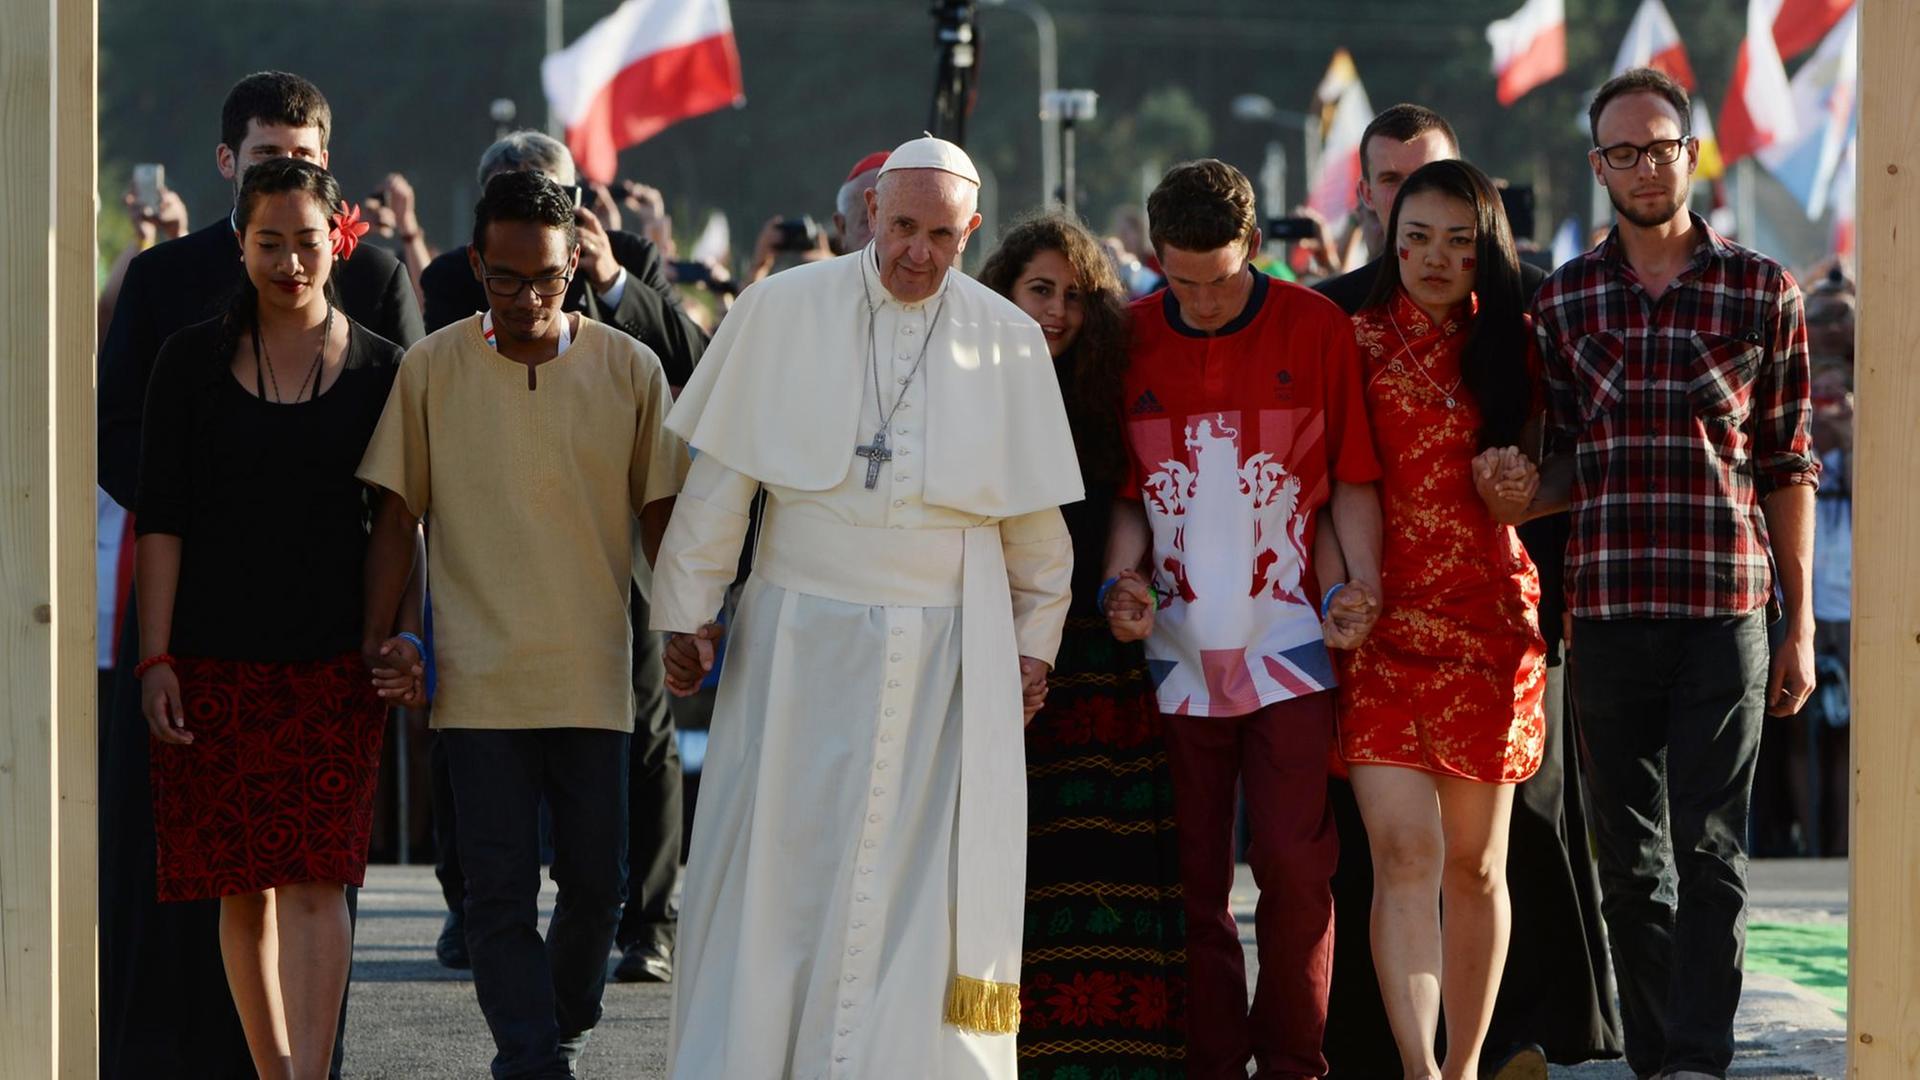 Papst Franziskus durchschreitet zusammen mit jugendlichen Repräsentanten die Heilige Tür auf dem Campus Misericordiae in Brzegi.